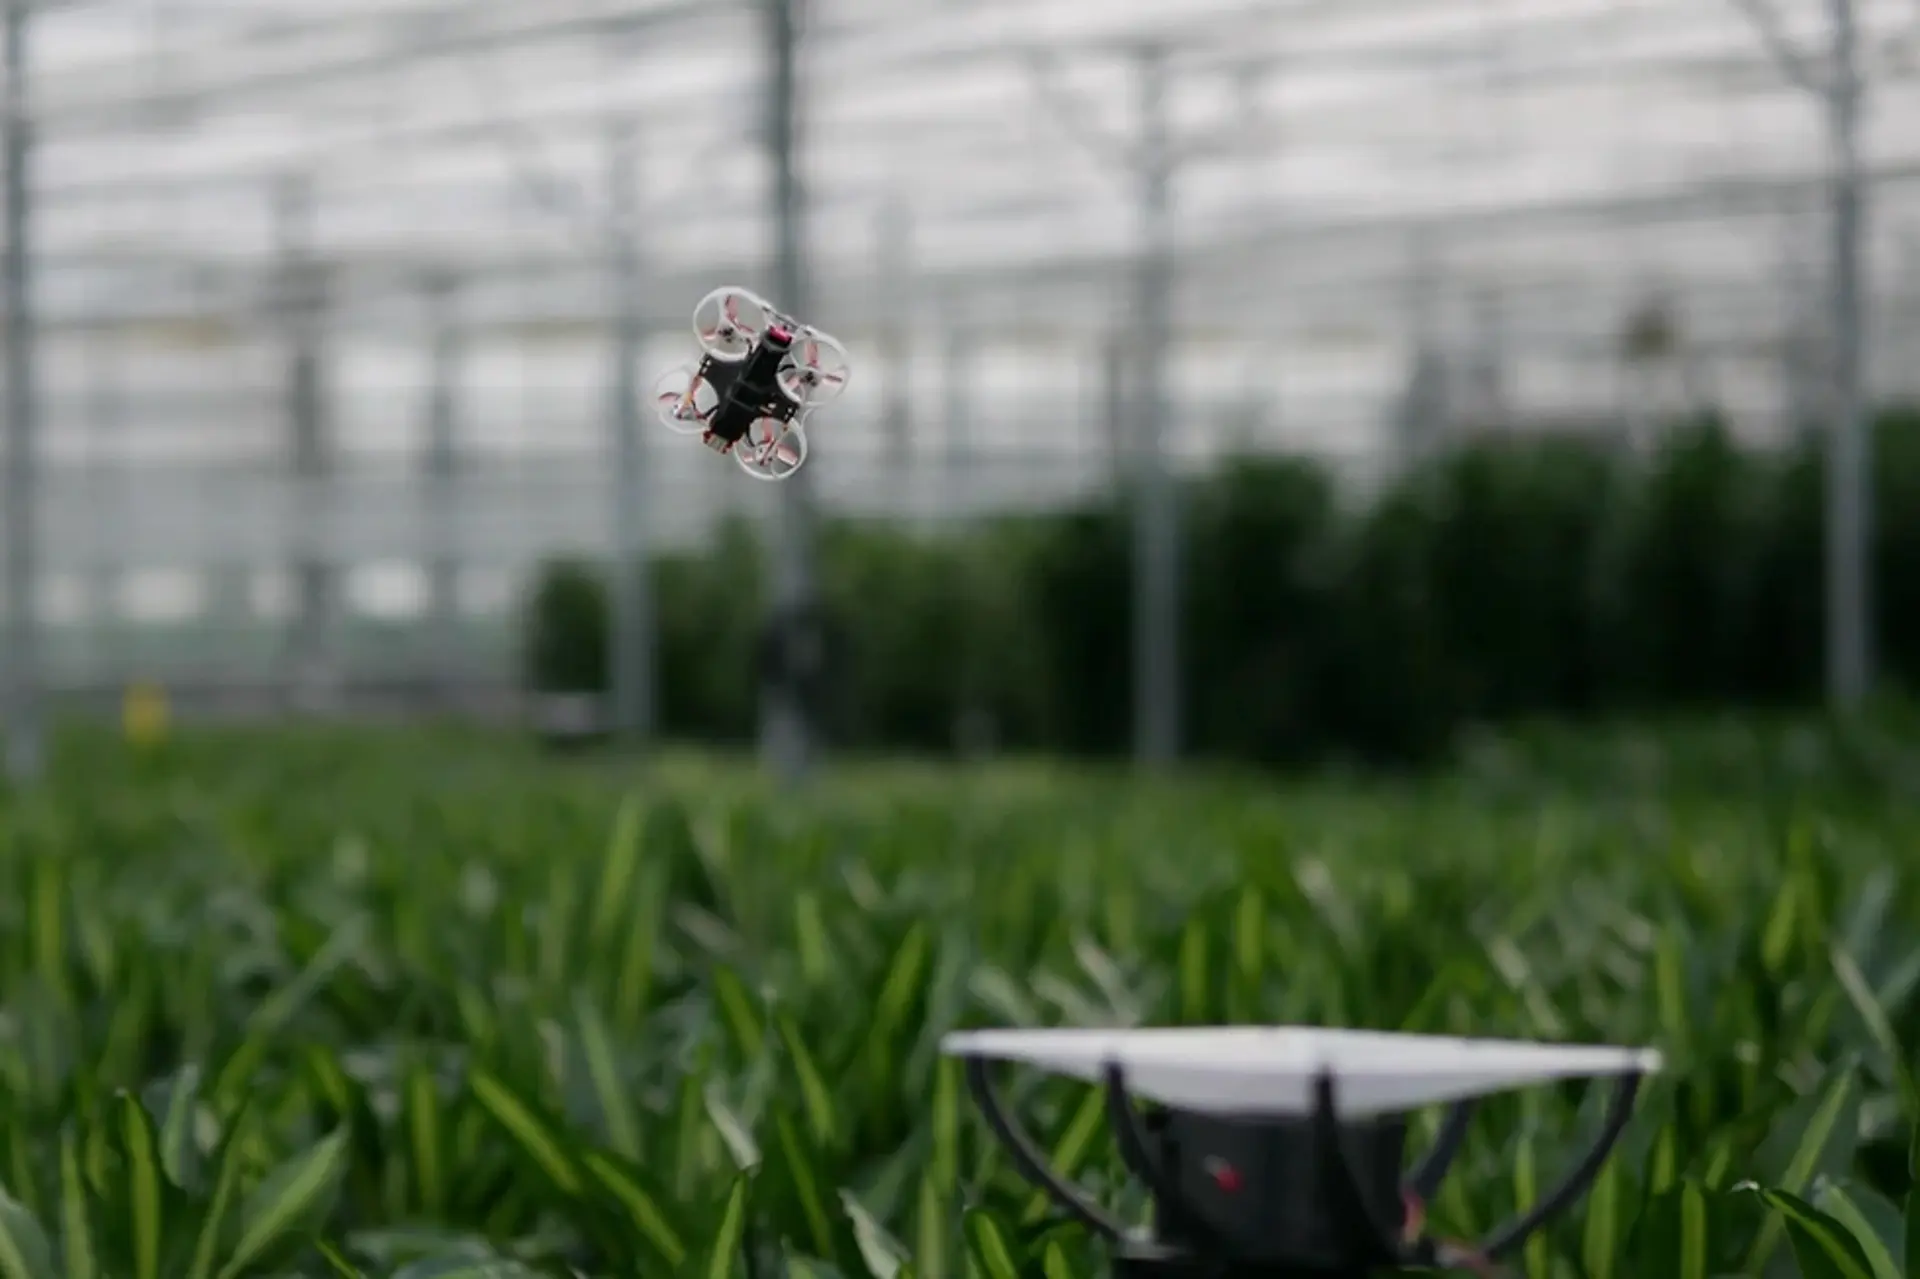 Des ingénieurs néerlandais veulent exterminer les insectes dans les serres à l'aide de drones, de caméras infrarouges et de l'intelligence artificielle